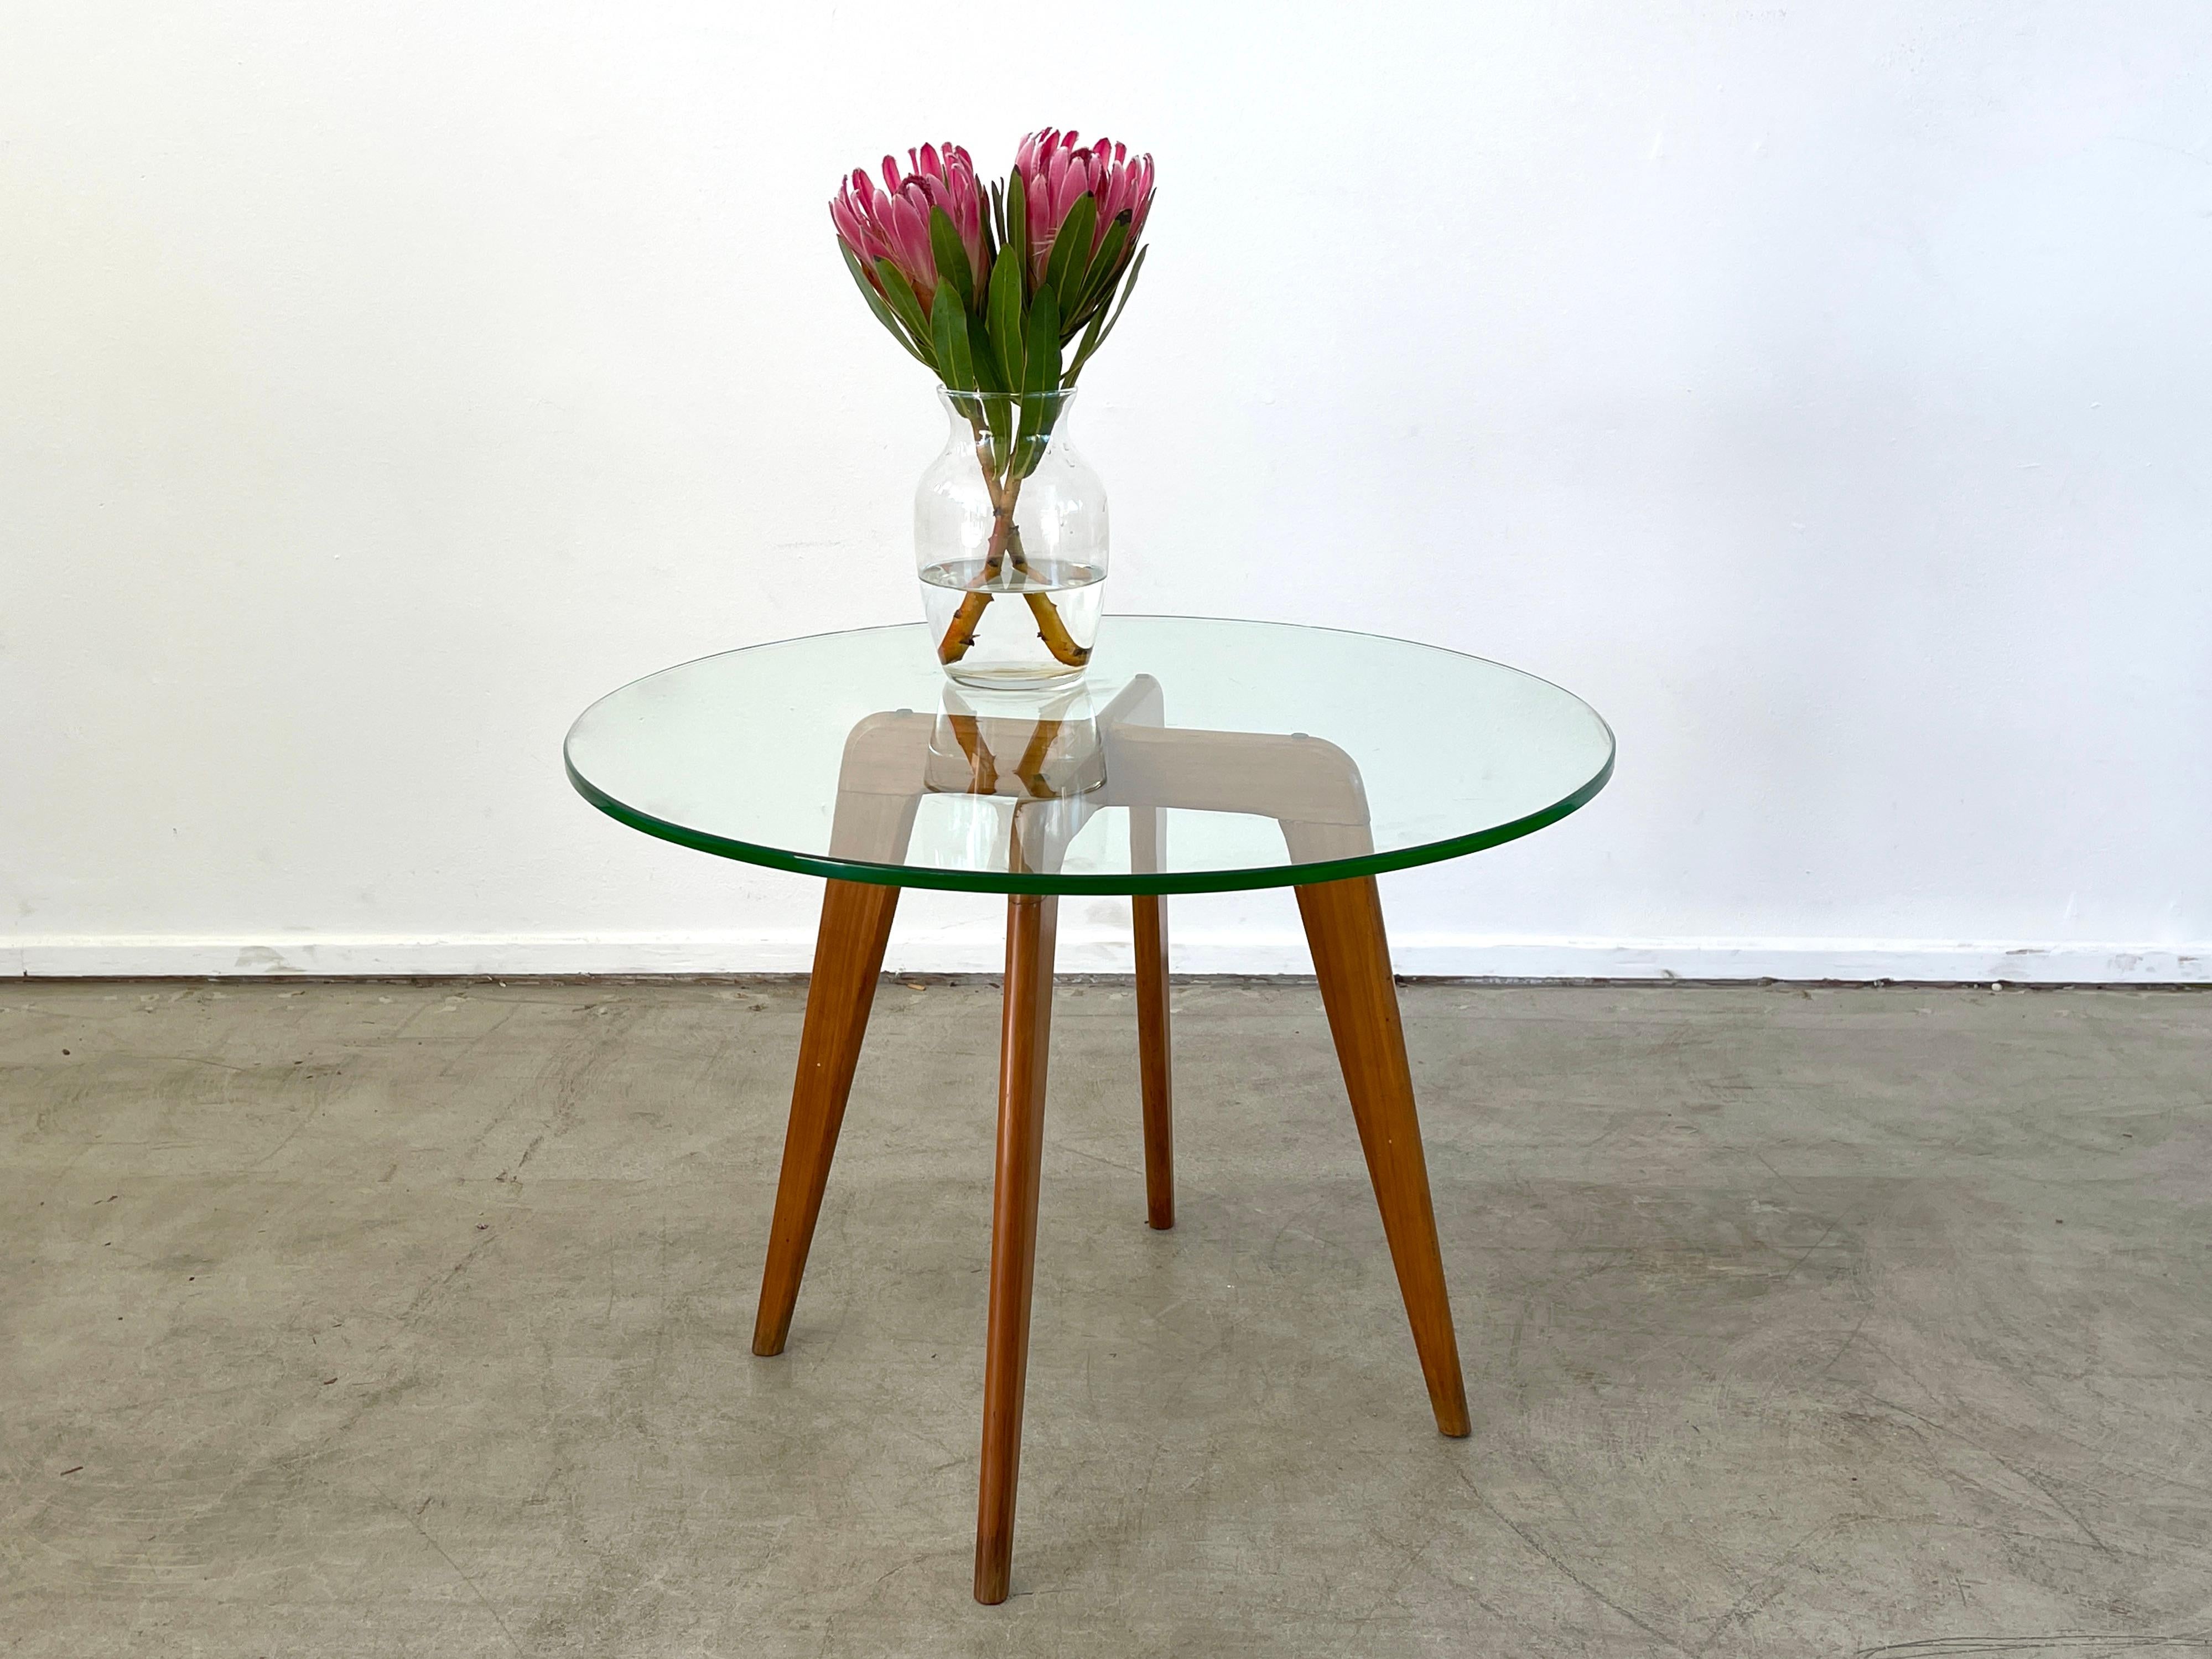 Table d'appoint italienne classique des années 1950 avec plateau en verre et pieds effilés. 
Magnifique design simple et simple.